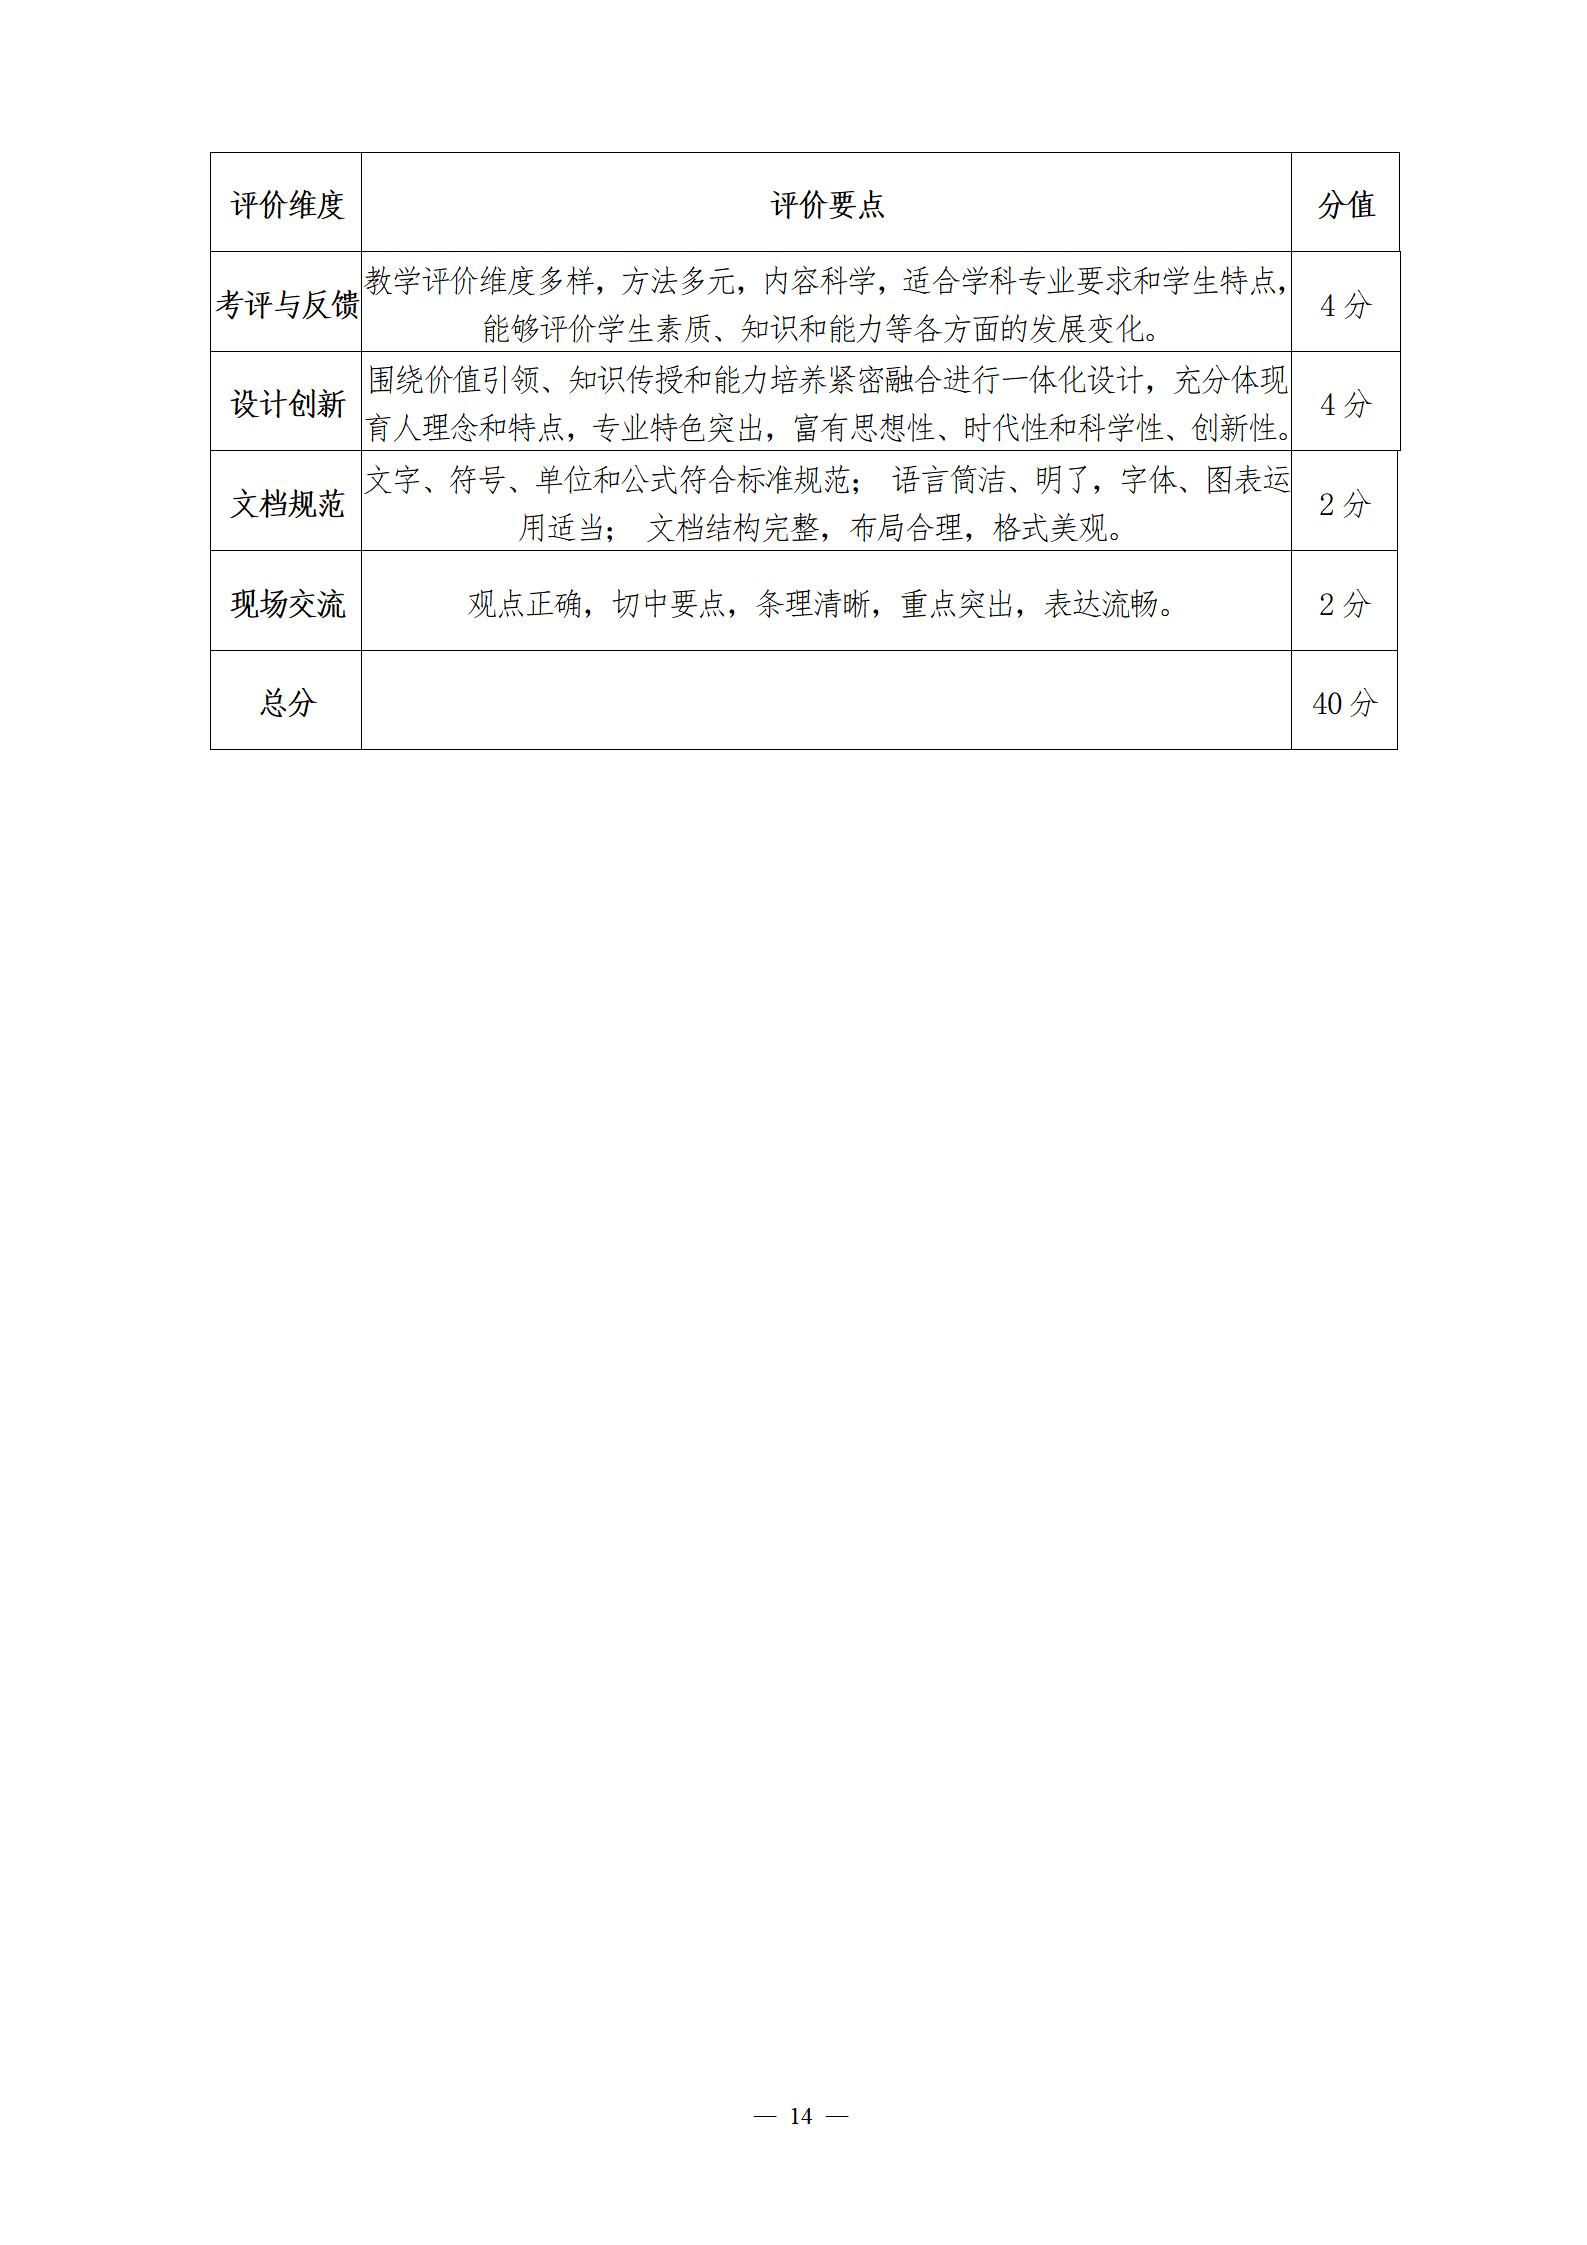 关于举办第四届湖北省高校教师教学创新大赛的通知_14.jpg